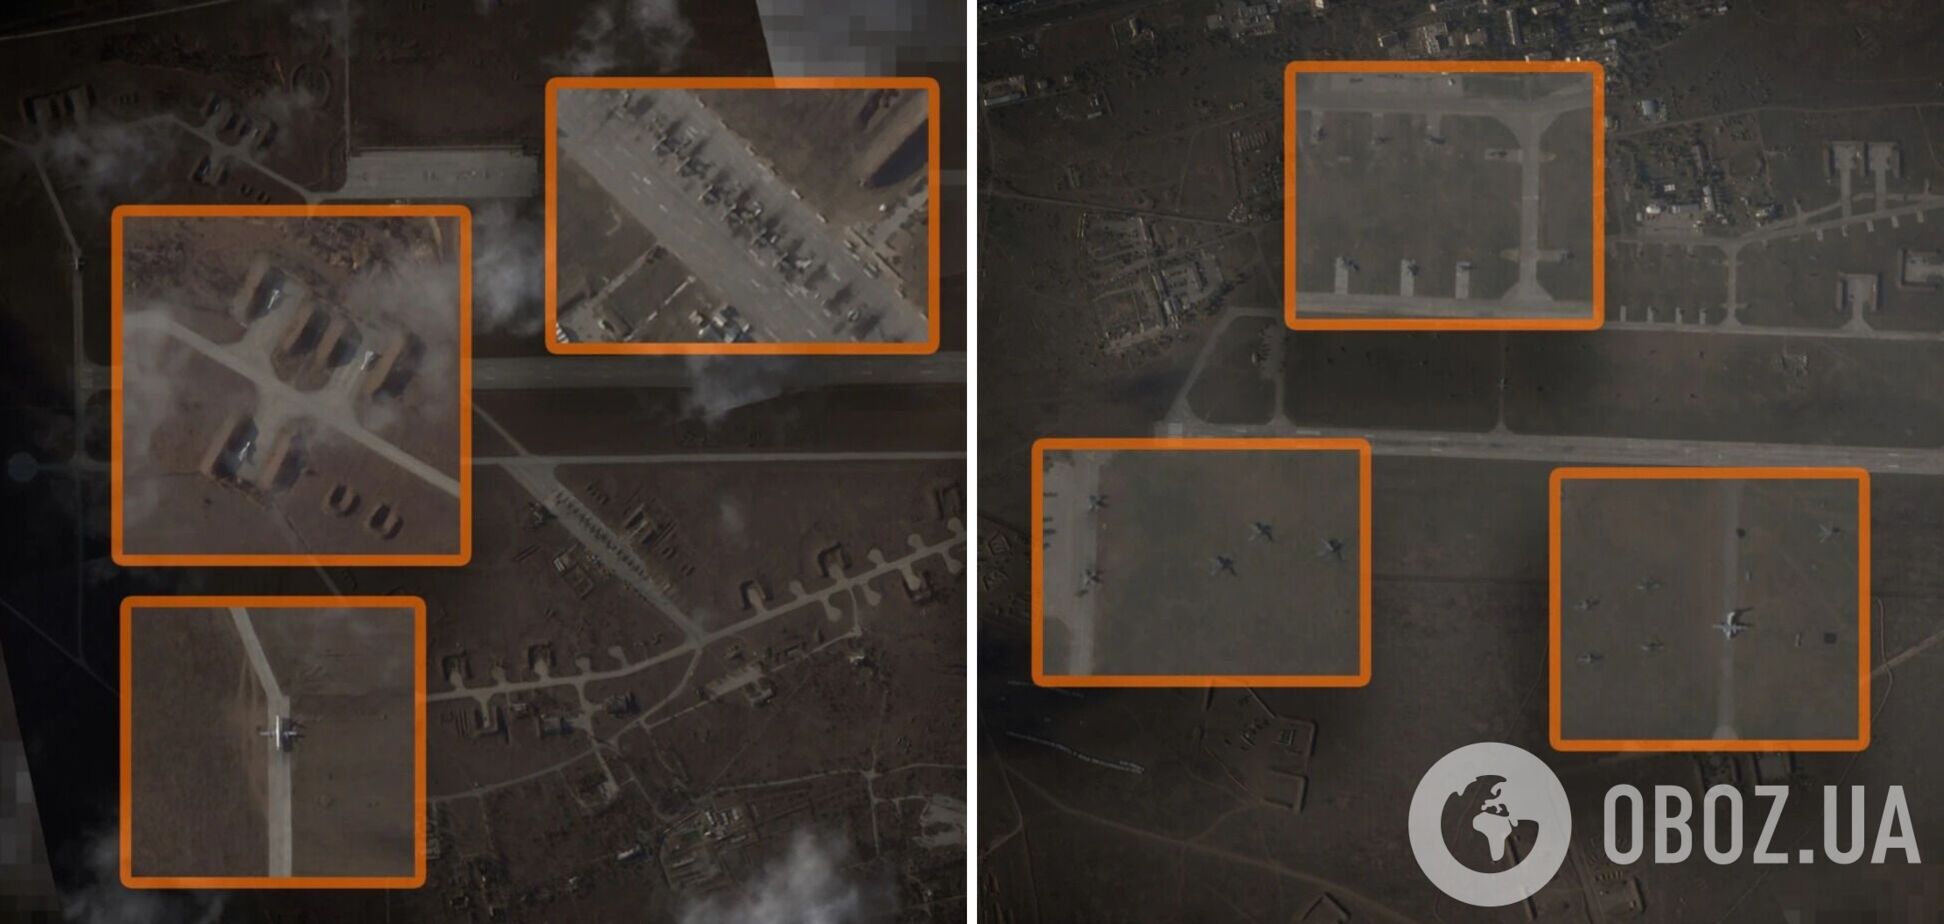 Россия развернула в оккупированном Крыму 10 военных аэродромов и два авиазавода: спутниковые фото